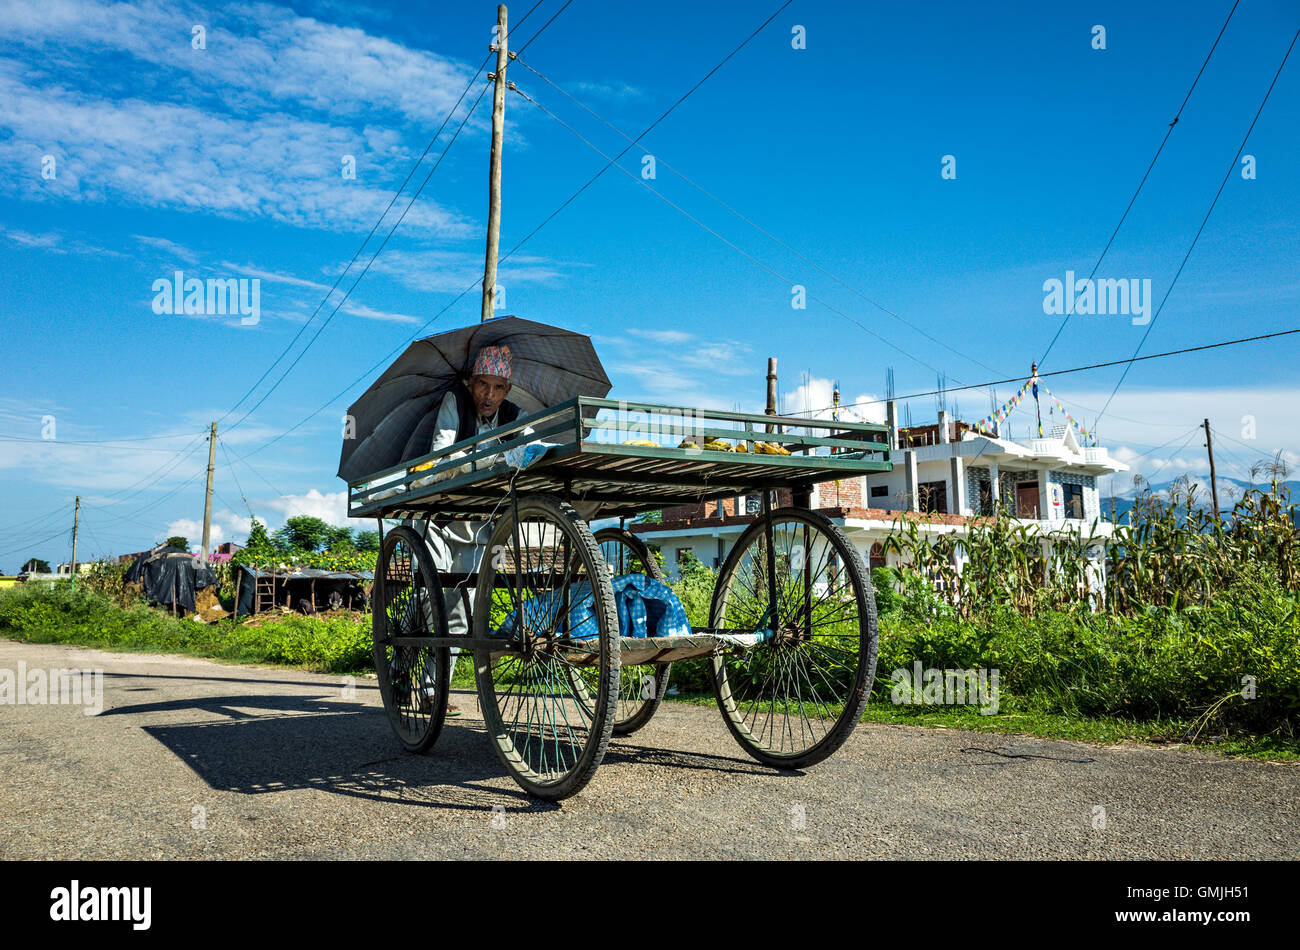 Un vendeur de fruits de la rue en poussant son chariot à quatre roues, Hetauda, Népal Banque D'Images